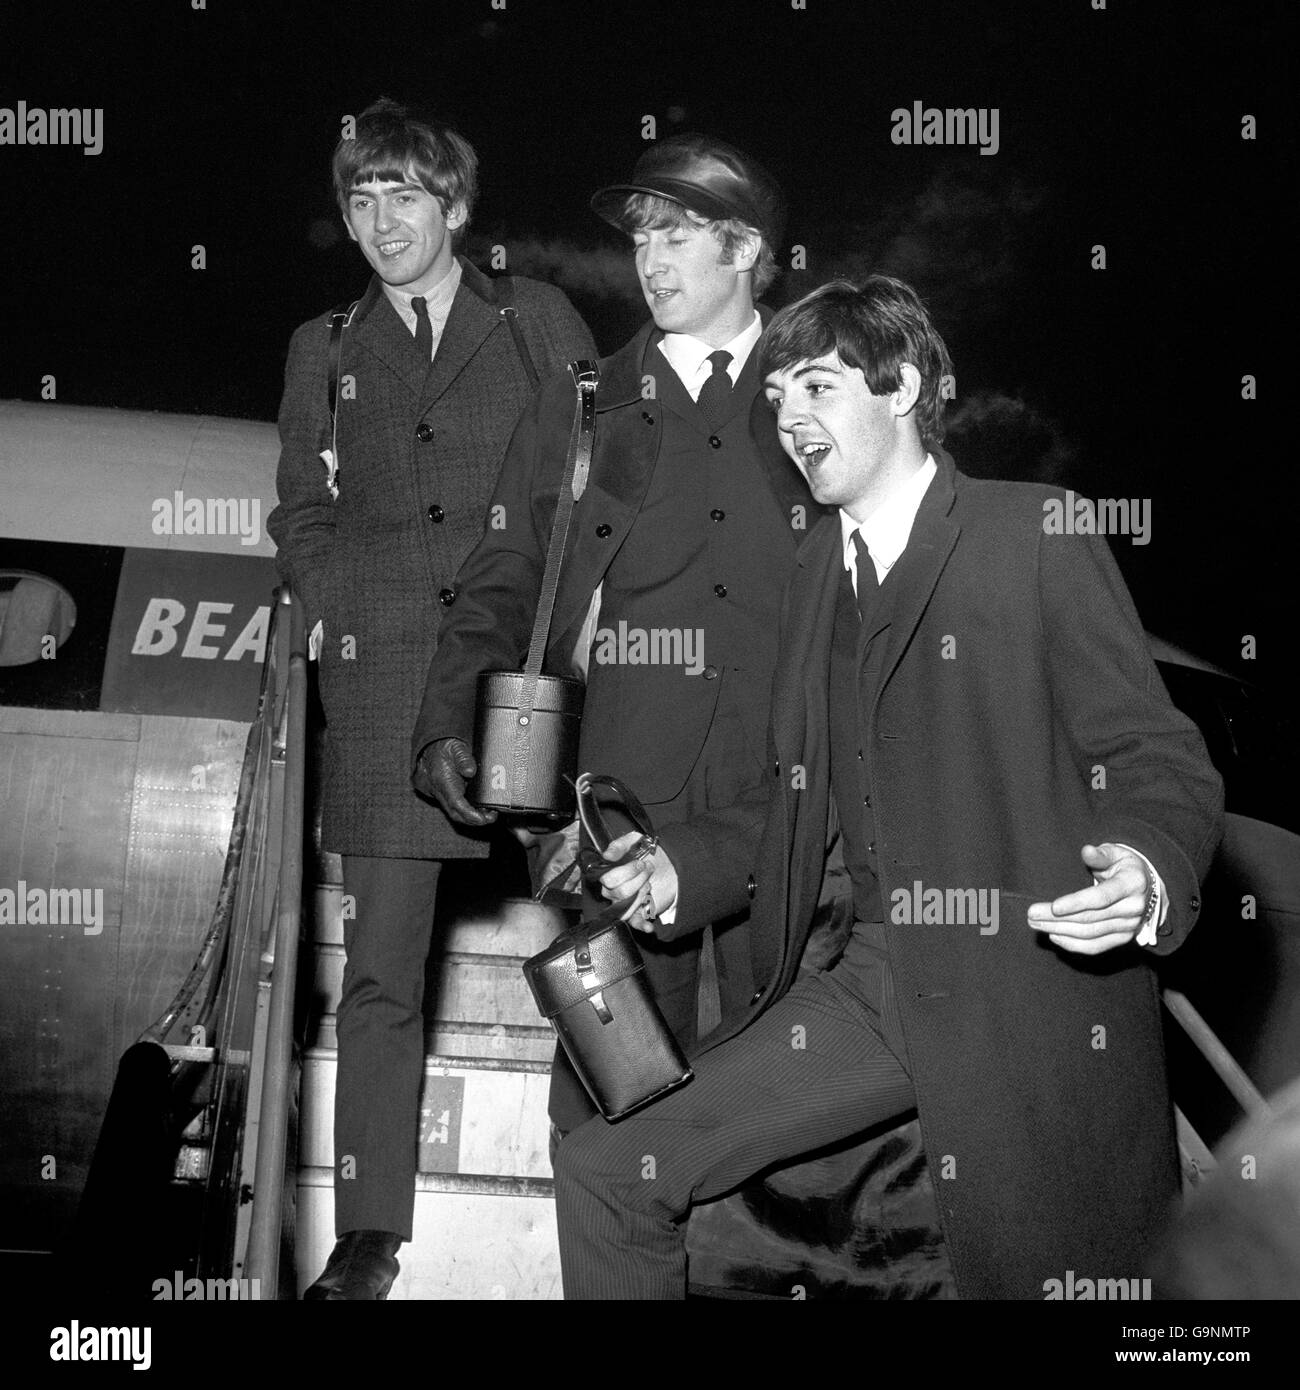 Drei der Beatles-Popgruppe besteigen am Flughafen London ein Passagierflugzeug für Paris. Von links nach rechts: George Harrison, John Lennon und Paul McCartney. Ringo Starr wurde wegen Nebel in Liverpool gestrandet. Stockfoto